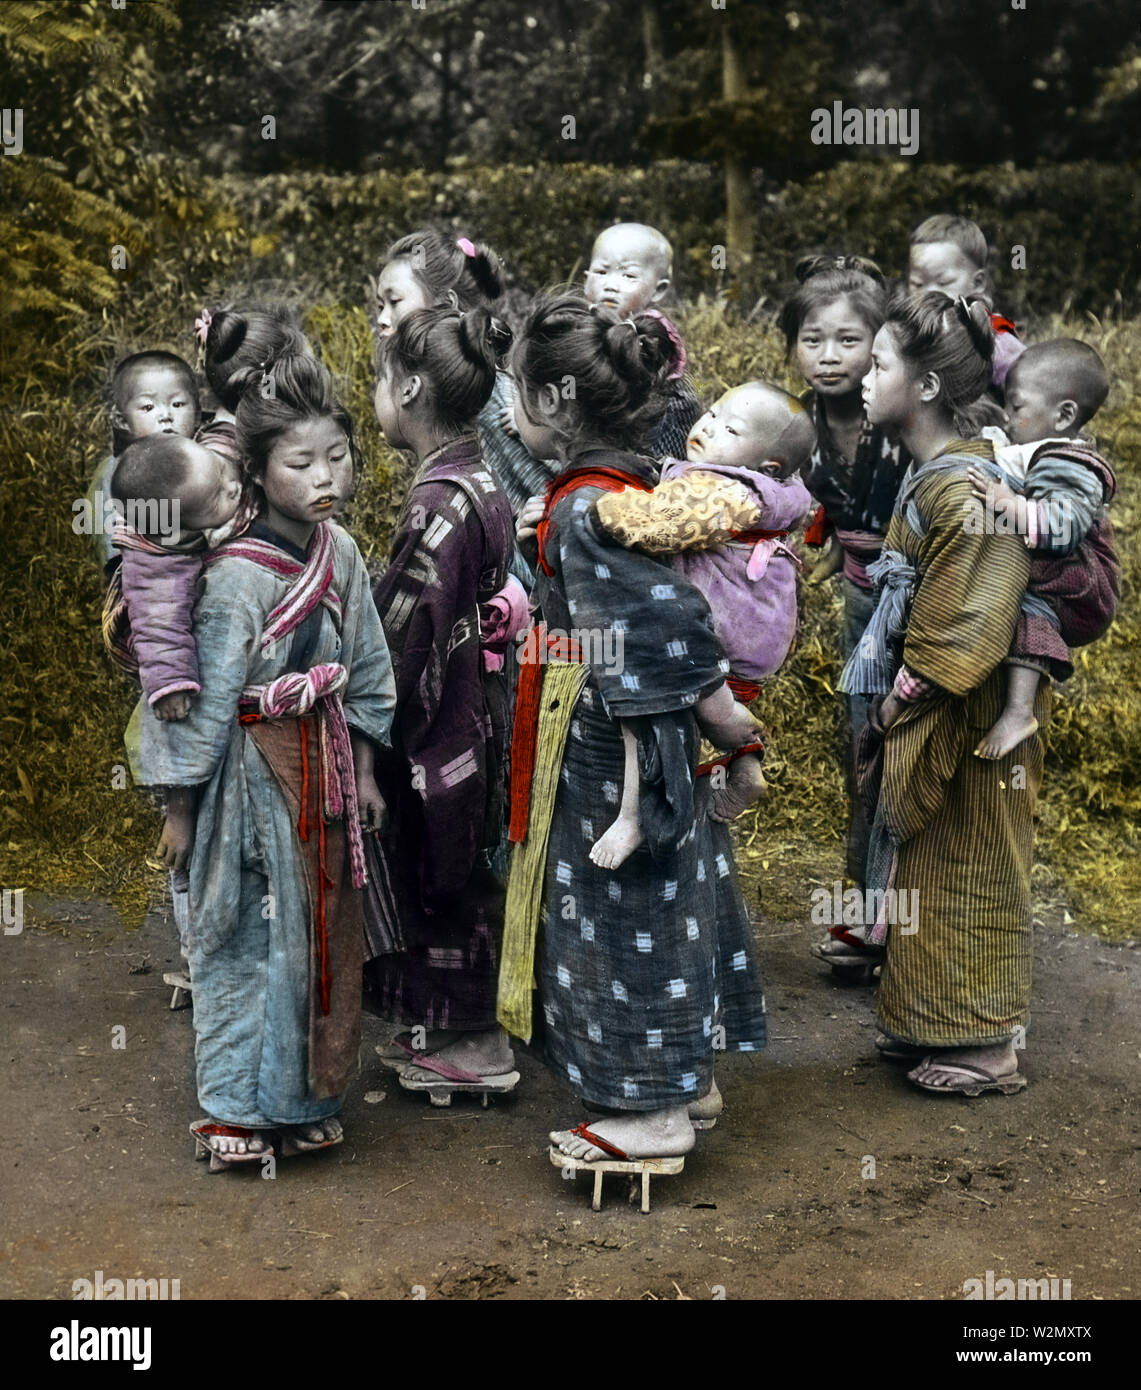 [ 1900 - Japon Japonais jeunes filles portant des bébés ] - un groupe de komori sur une route de campagne au début des années 1900. Komori étaient de jeunes filles de familles pauvres qui ont été engagés par l'année d'aider les mères de classe moyenne et supérieure dans le soin de leur enfant. En plus d'effectuer le bébé autour, la komori pourrait aussi aider un peu avec les travaux ménagers. Komori a reçu de la nourriture, le logement, les vêtements, et parfois un peu d'argent. Datée de 1900-1903 par Enami Rob spécialiste Oechsle. 20e siècle vintage lame de verre. Banque D'Images